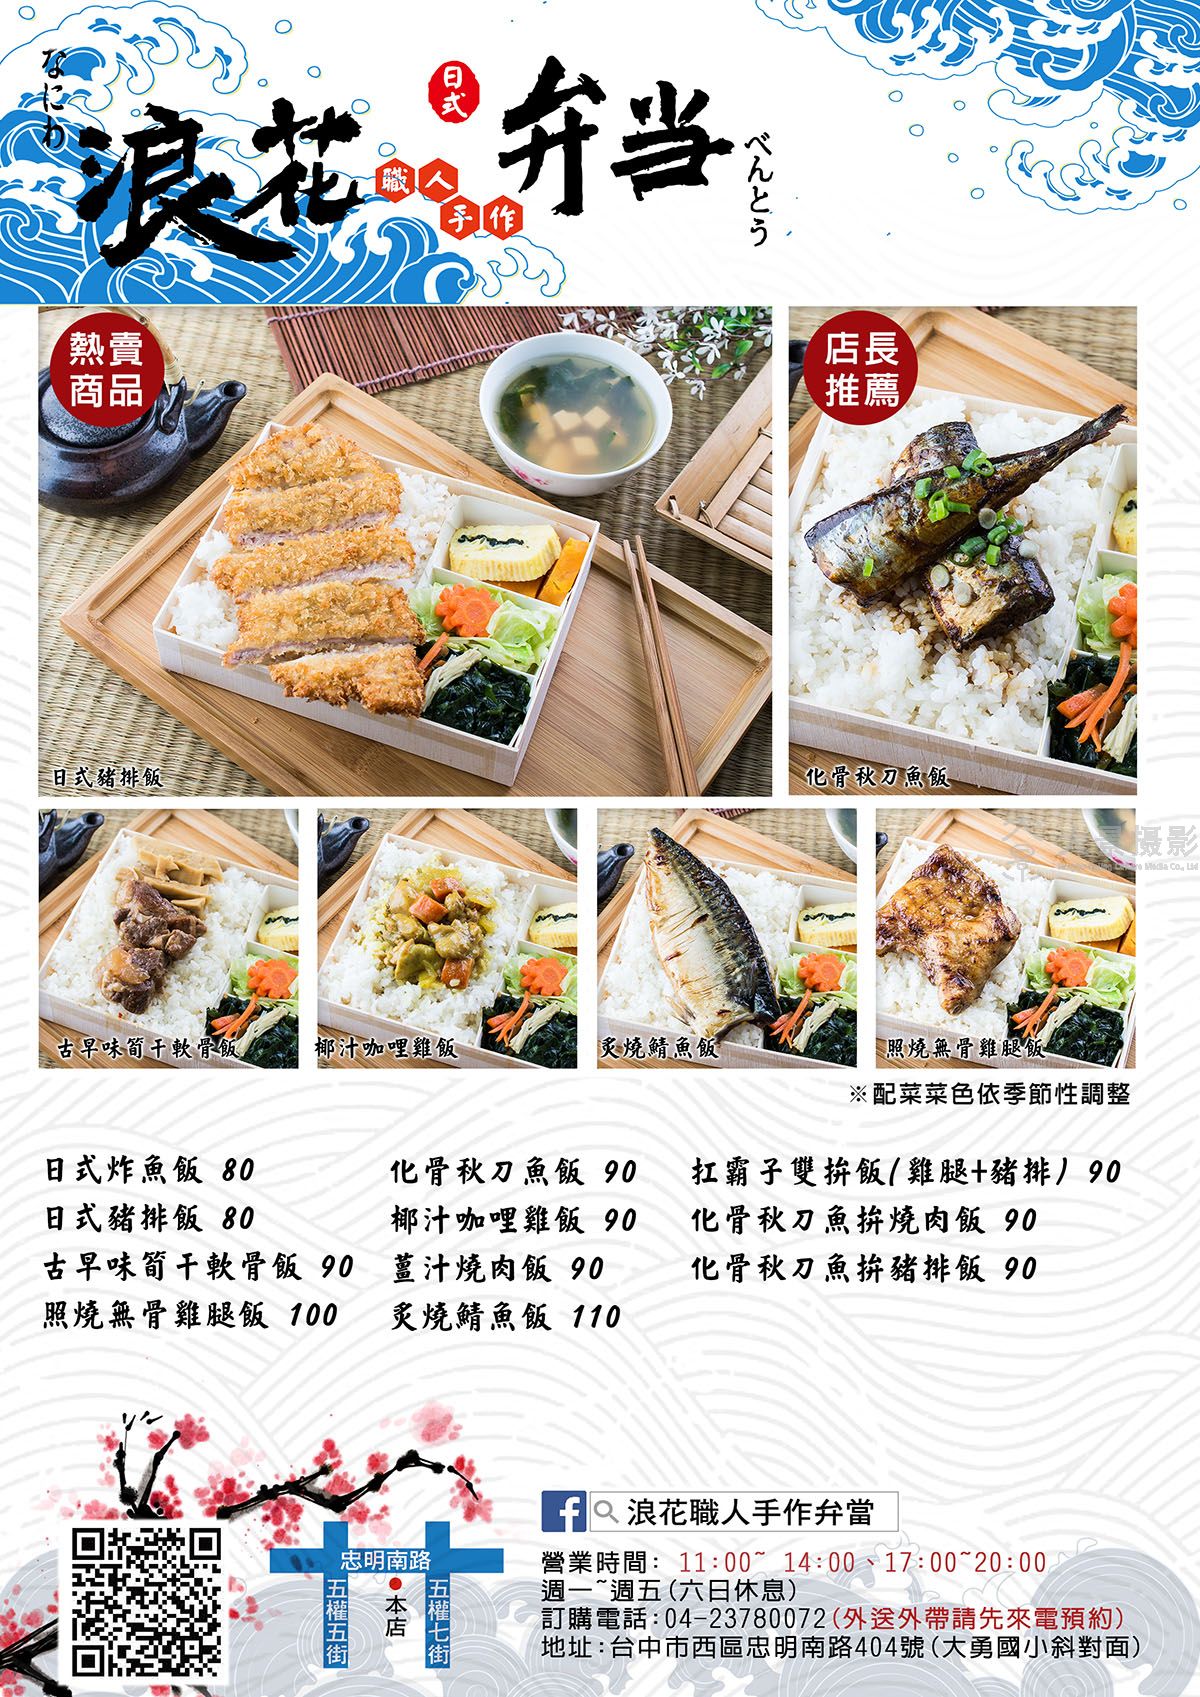 上海菜单设计哪里有